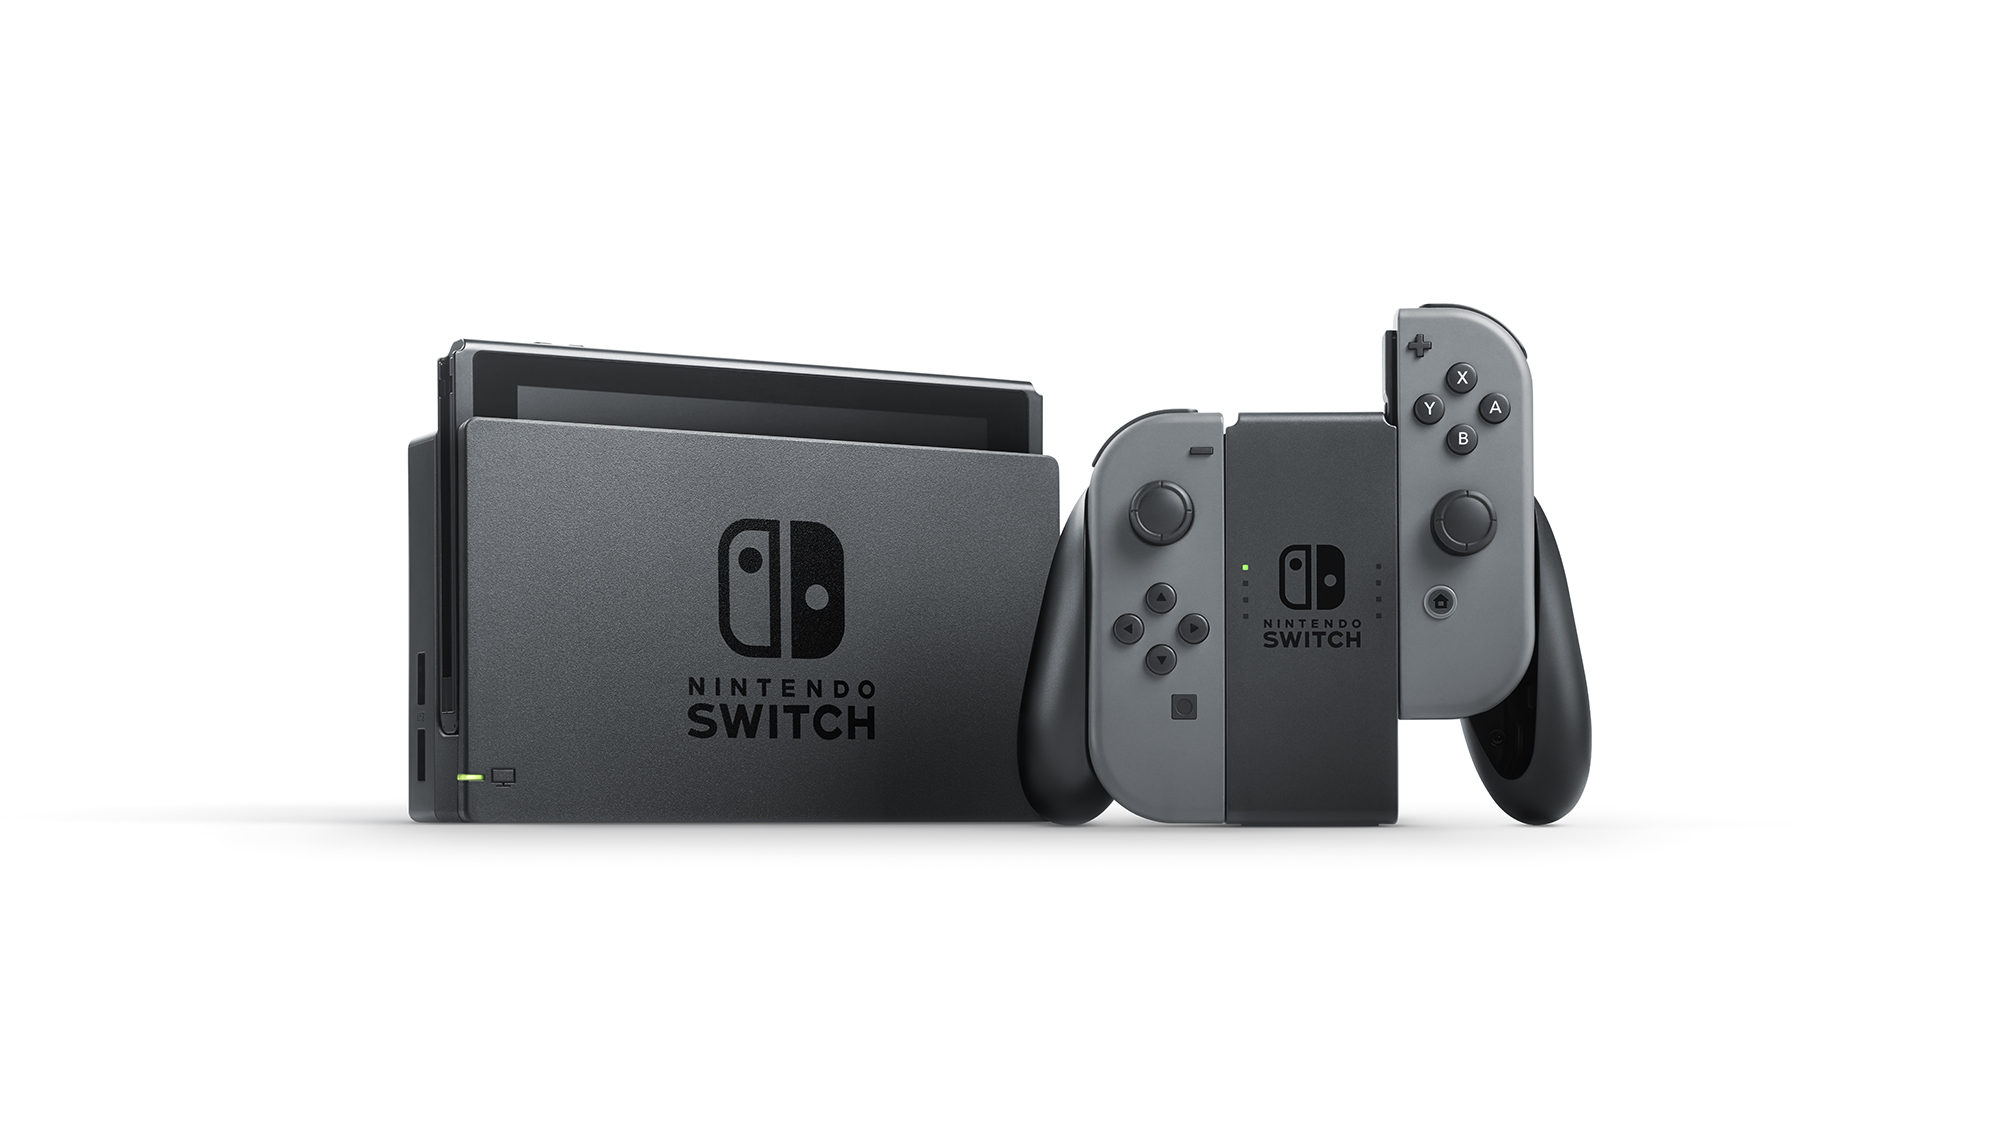 Nintendo Switch Bundle with Mario Kart 8 Deluxe - Gray - image 4 of 6